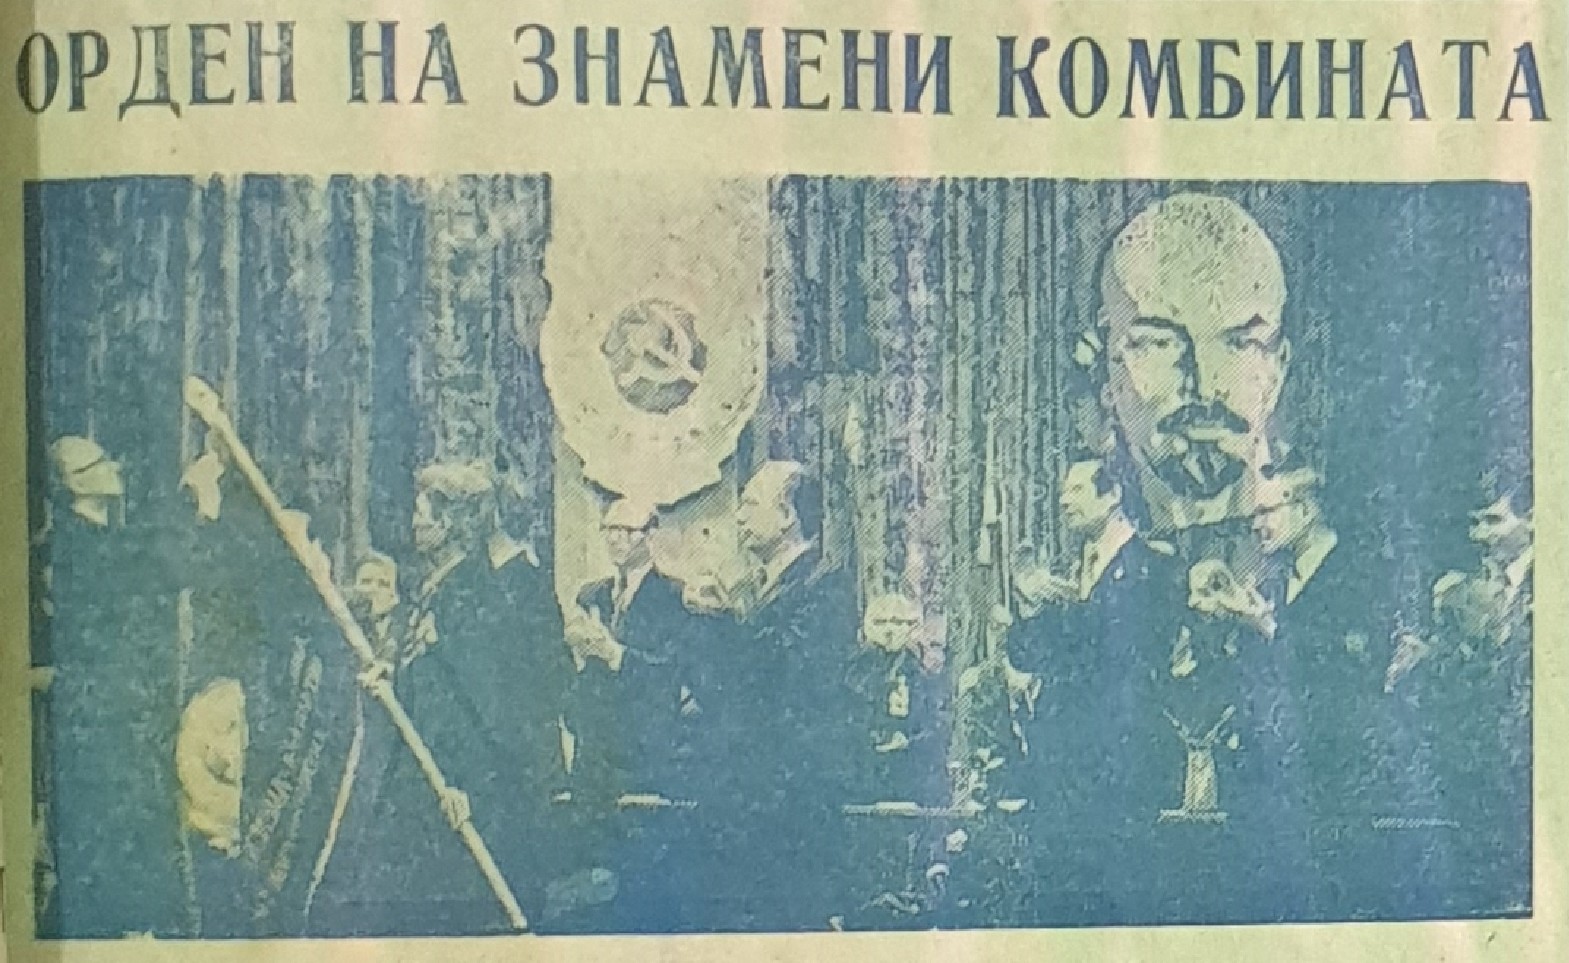 Орден [Трудового Красного Знамени] на знамени Сясьского комбината